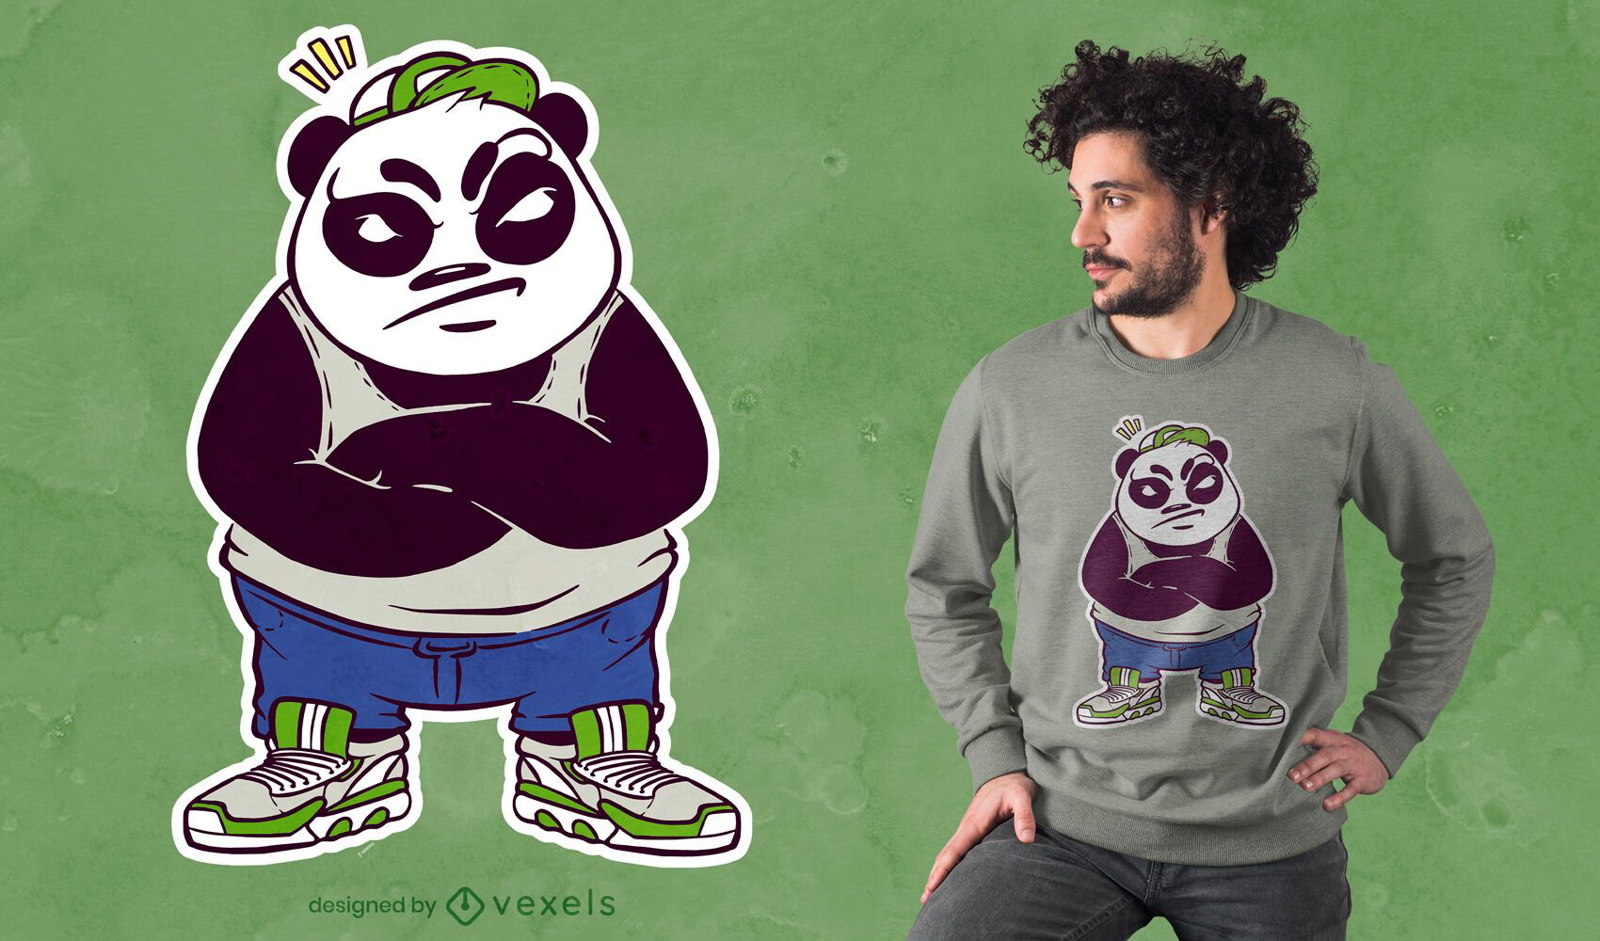 Verrückter männlicher Panda-T-Shirt Entwurf